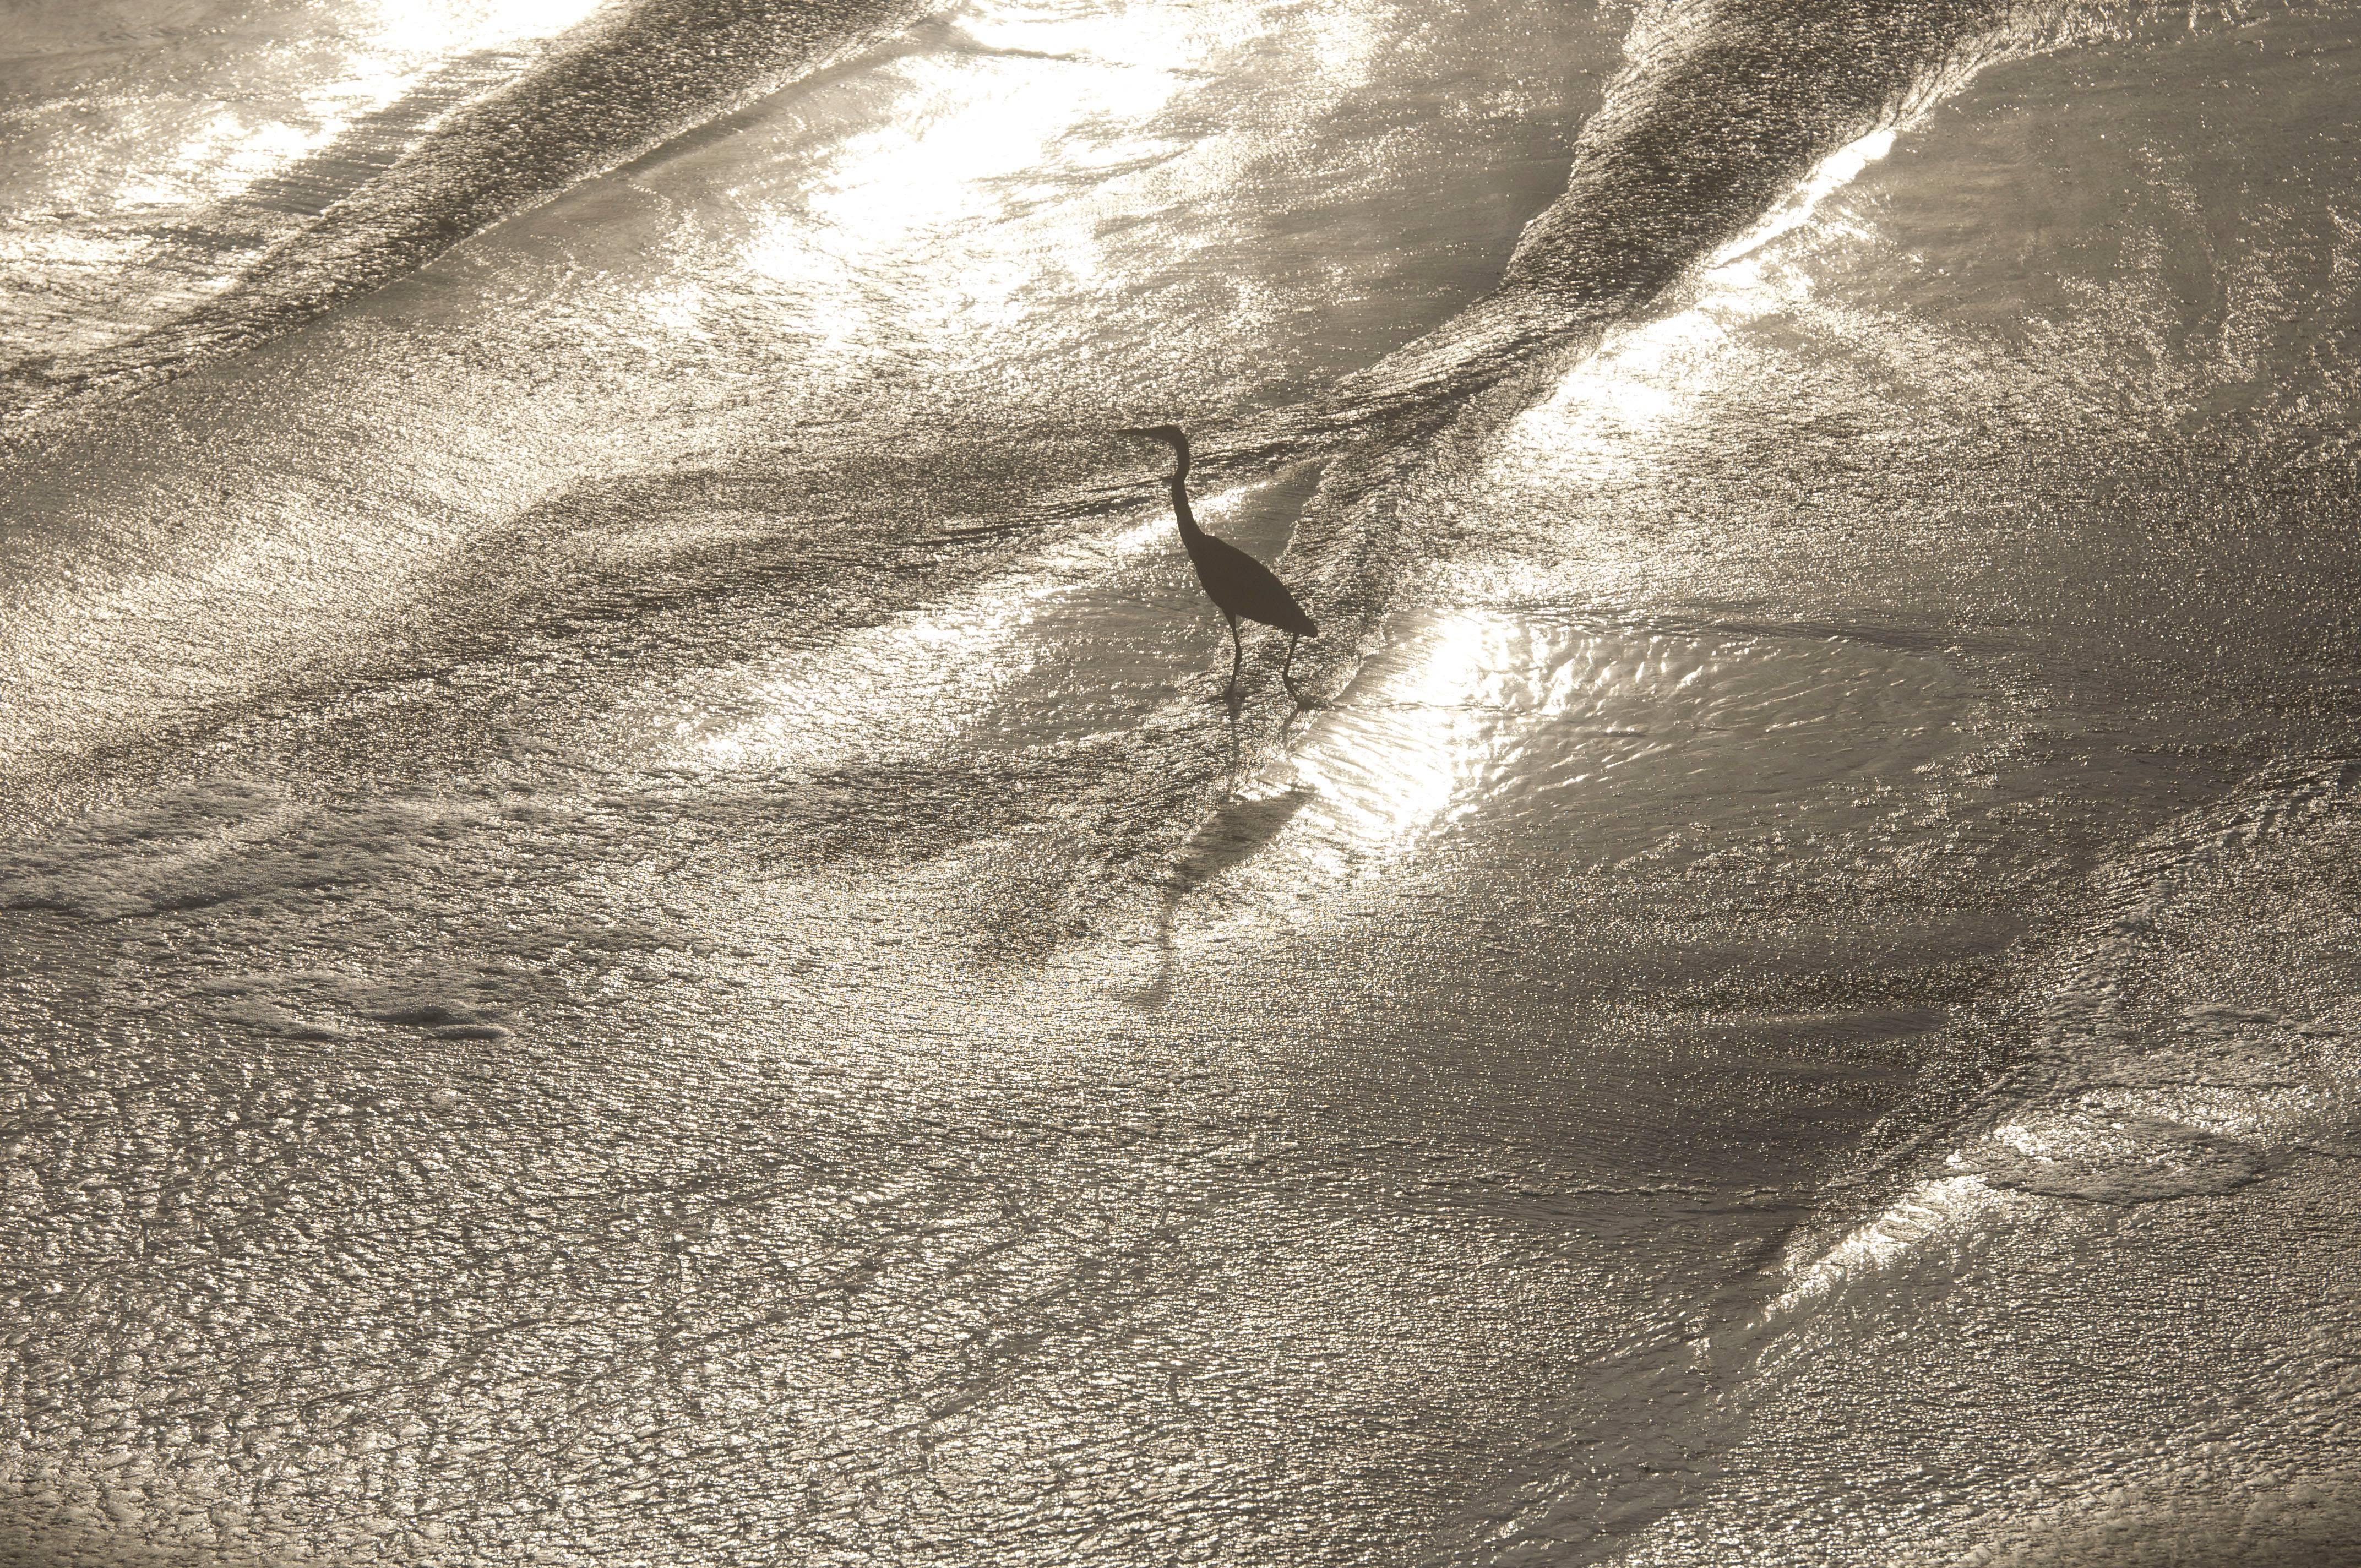 Gaétan Caron Abstract Photograph - "Wading" Framed Color Photograph, Mendocino Coast, CA, 2015